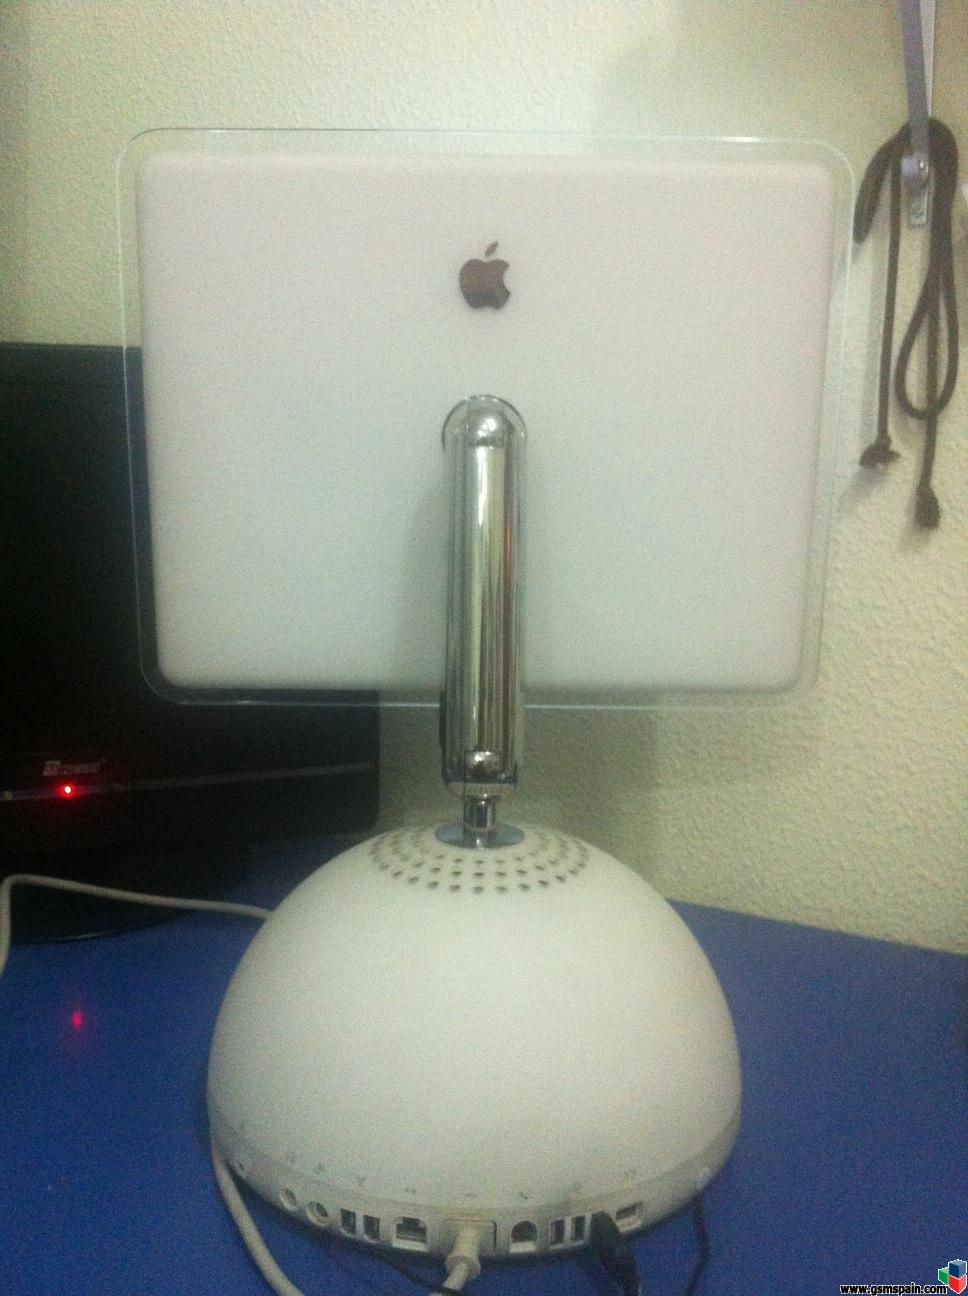 [VENDO] iMac G4. iMac Lamparita. Para amantes de Apple y coleccionistas ;)